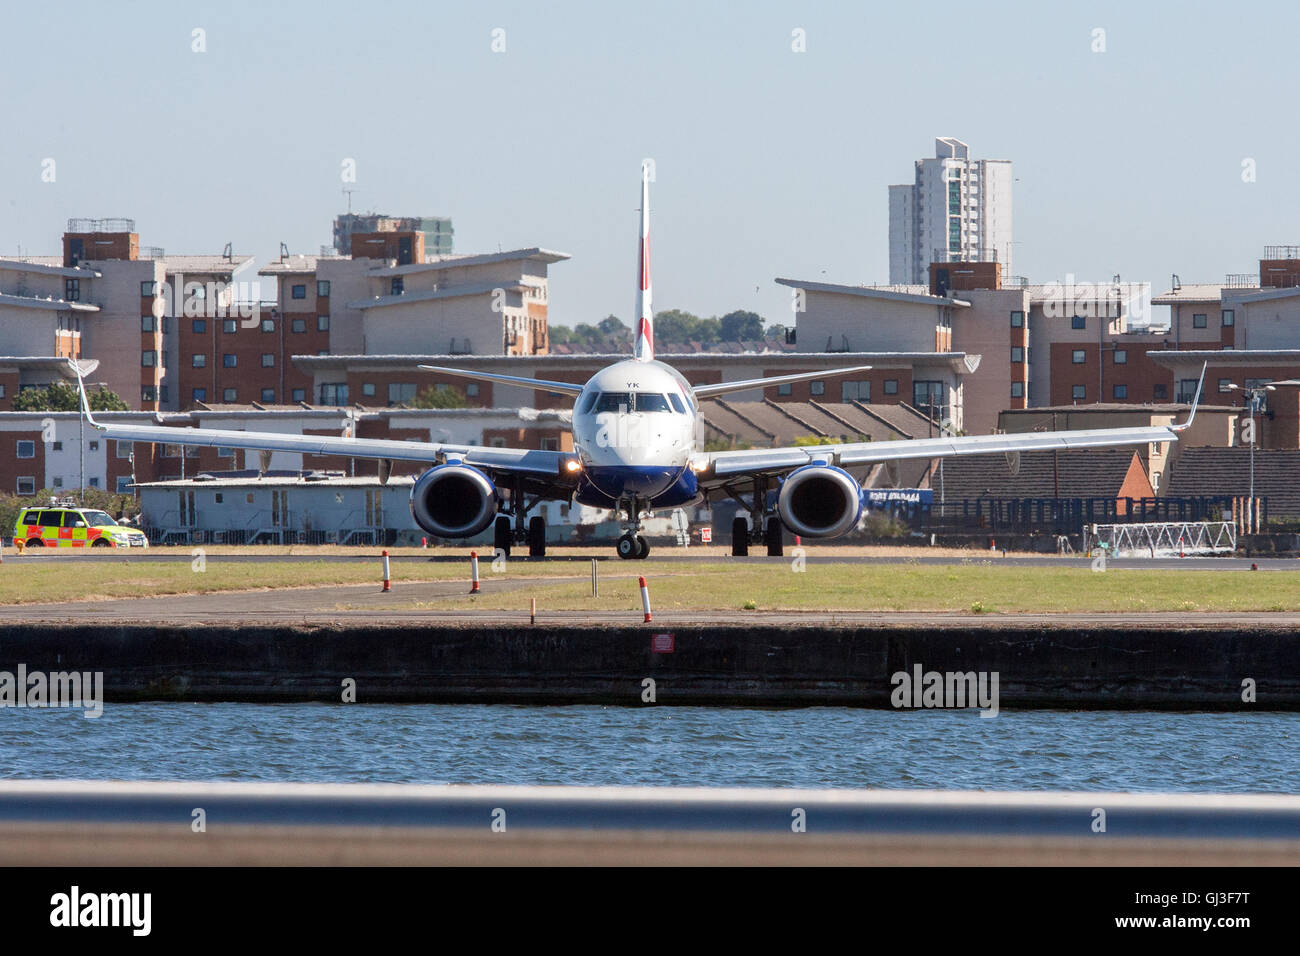 jet, plane, runway, airport, Stock Photo